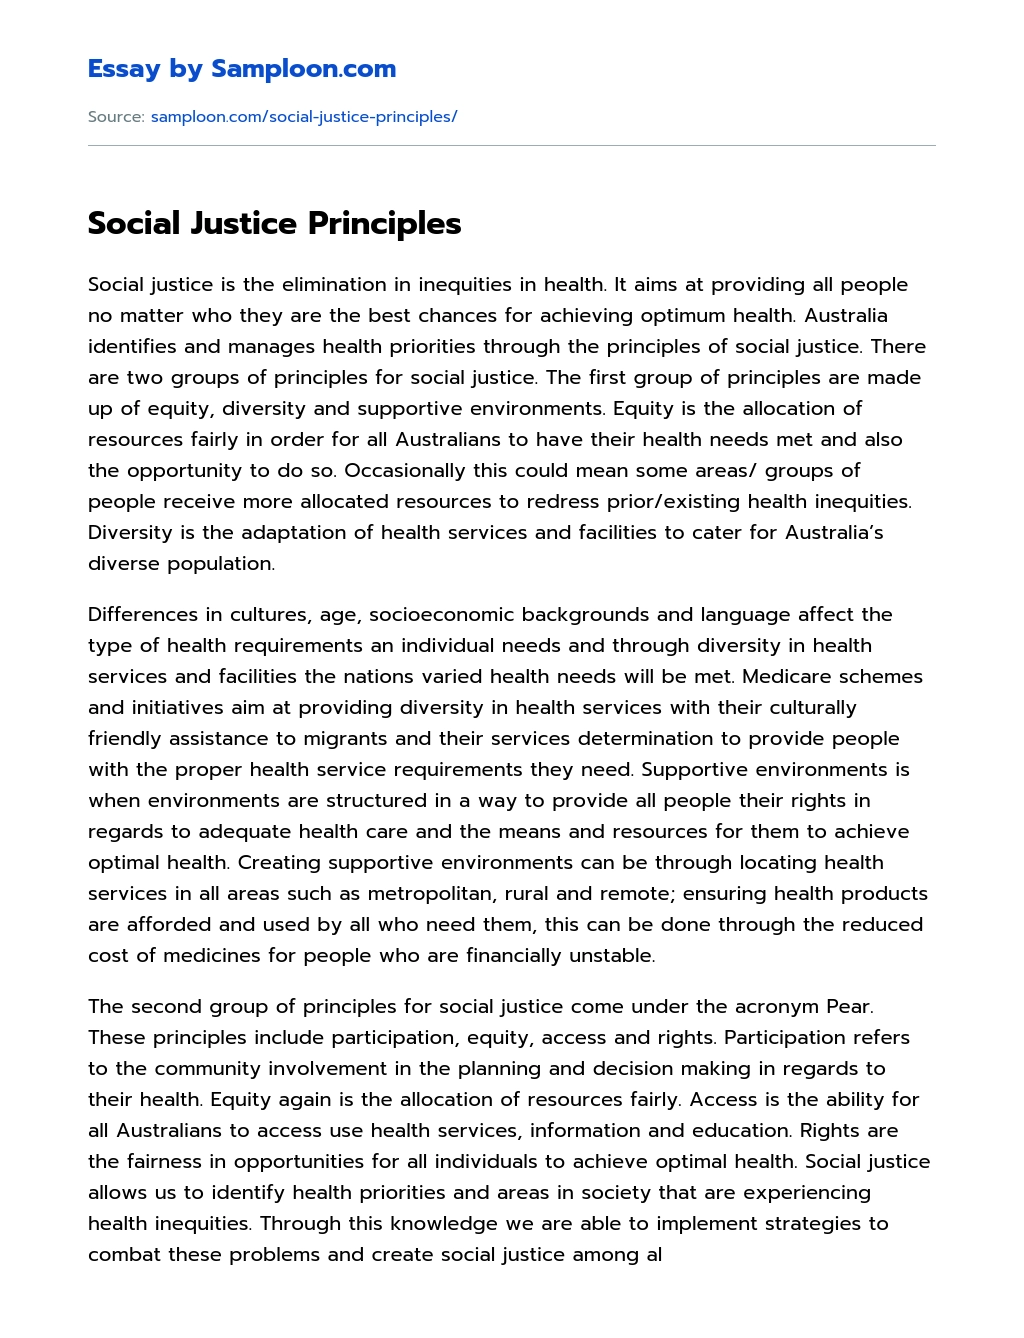 Social Justice Principles essay